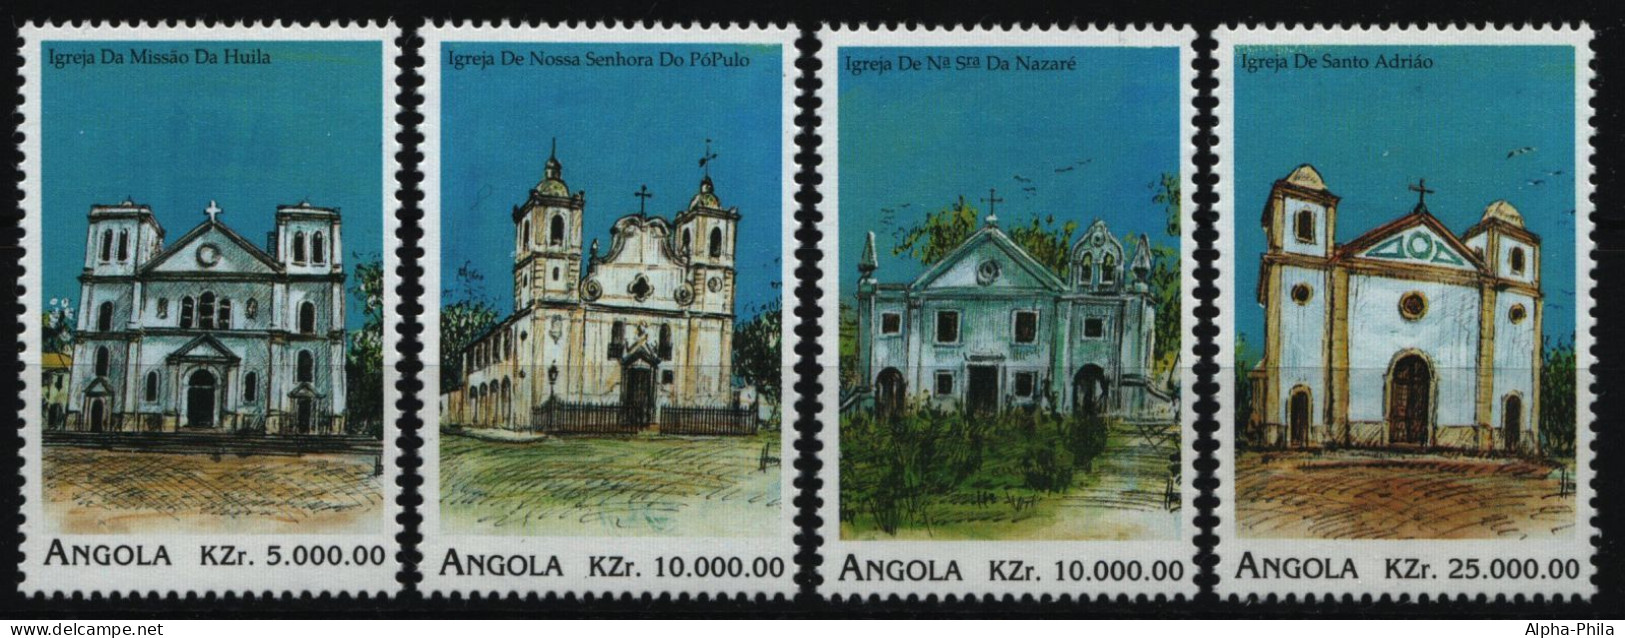 Angola 1996 - Mi-Nr. 1098-1101 ** - MNH - Kirchen / Churches - Angola